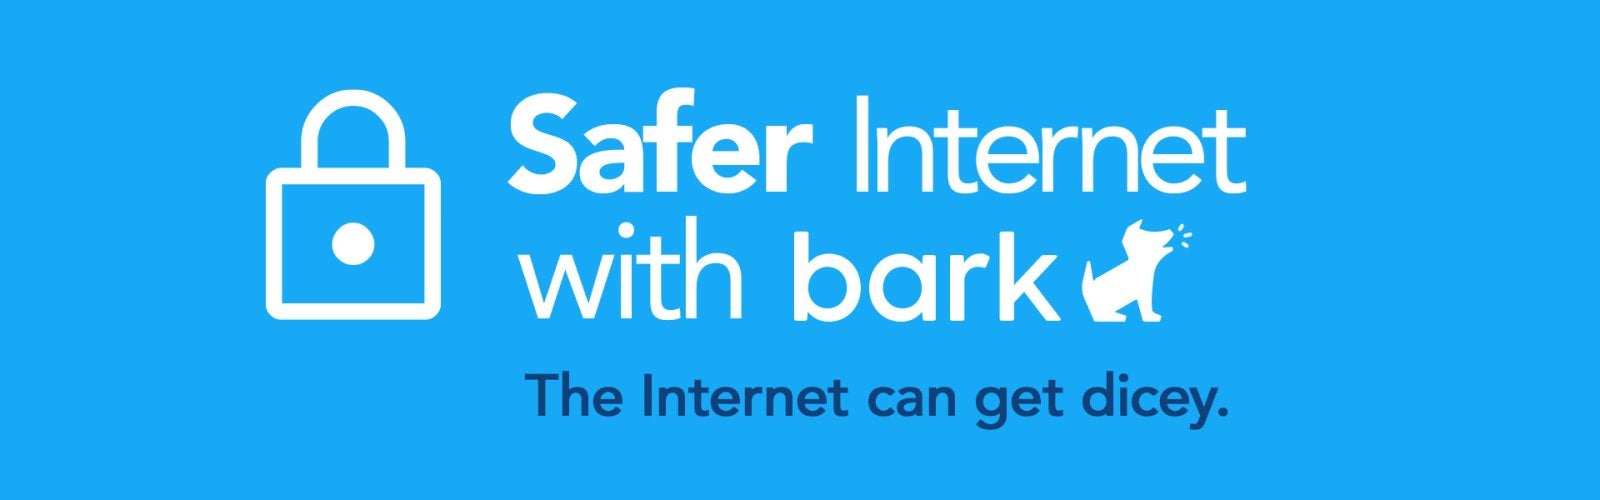 safer content, bark jr, bark, parental controls